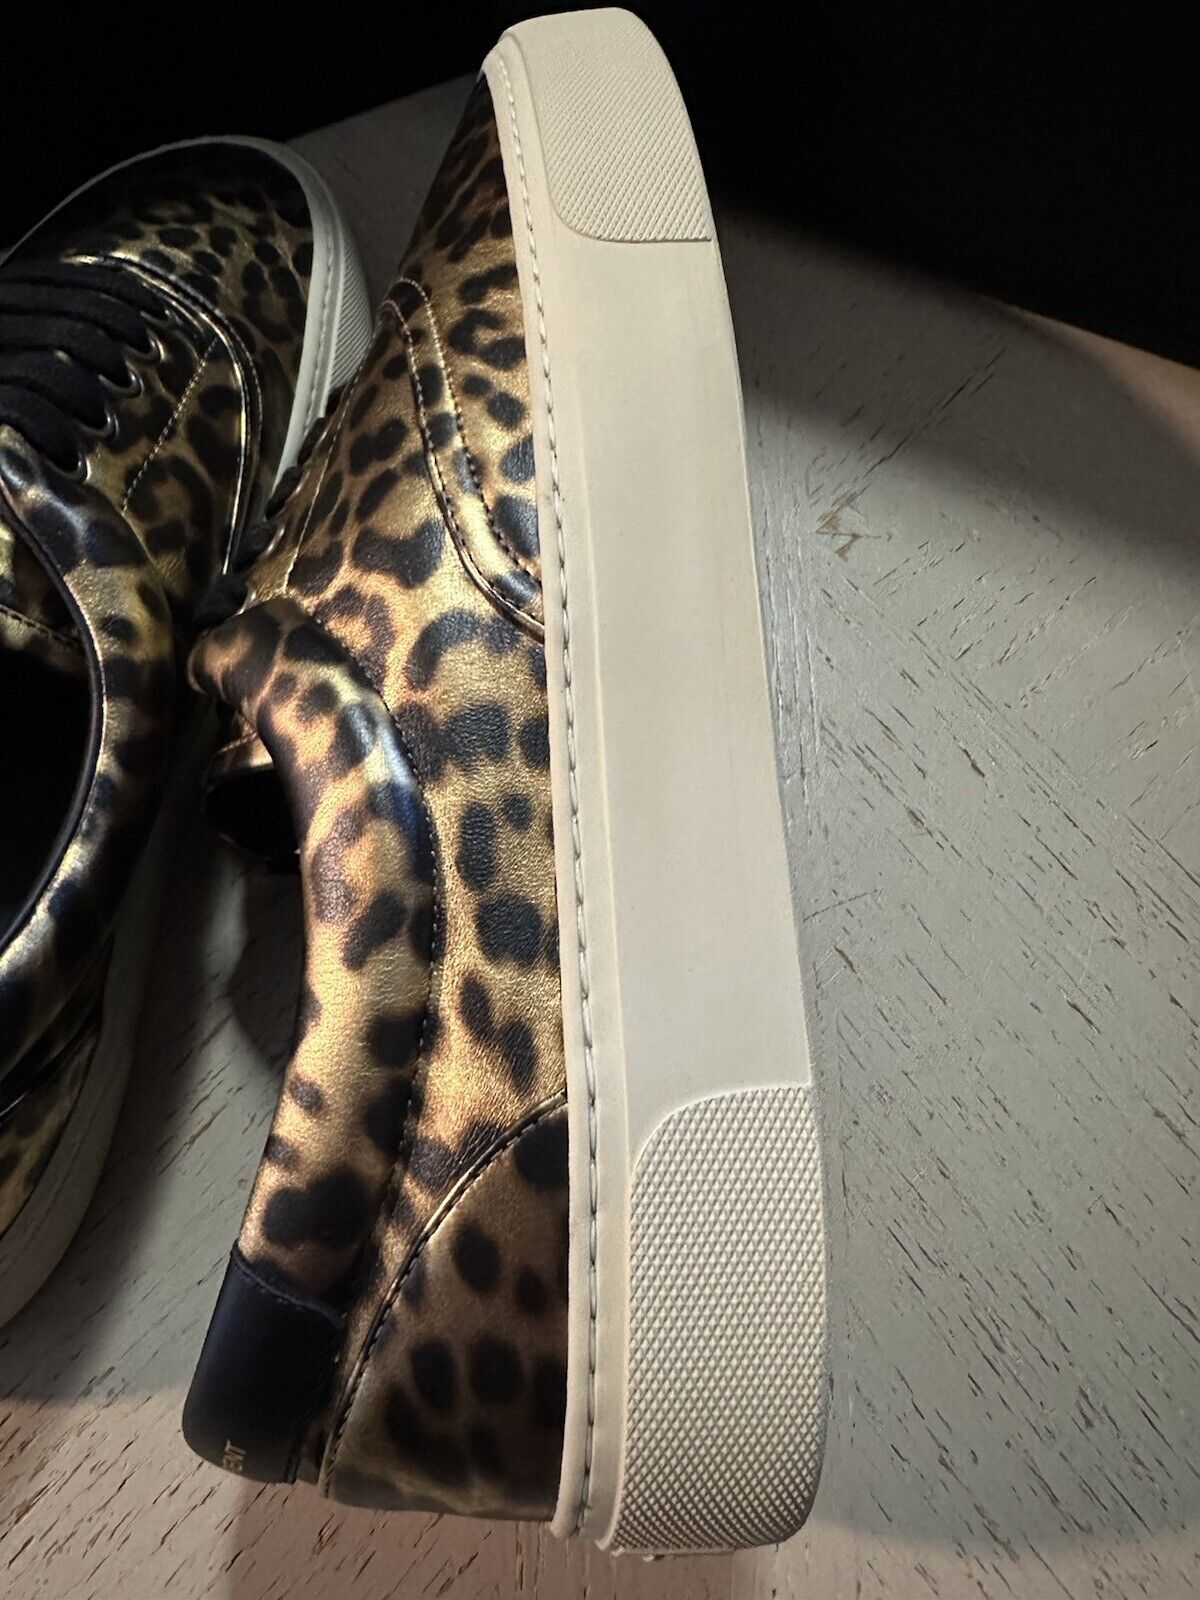 NIB Saint Laurent Men Leather Leopard Pr. Sneakers  Black/Gold 11 US/44 E 689072